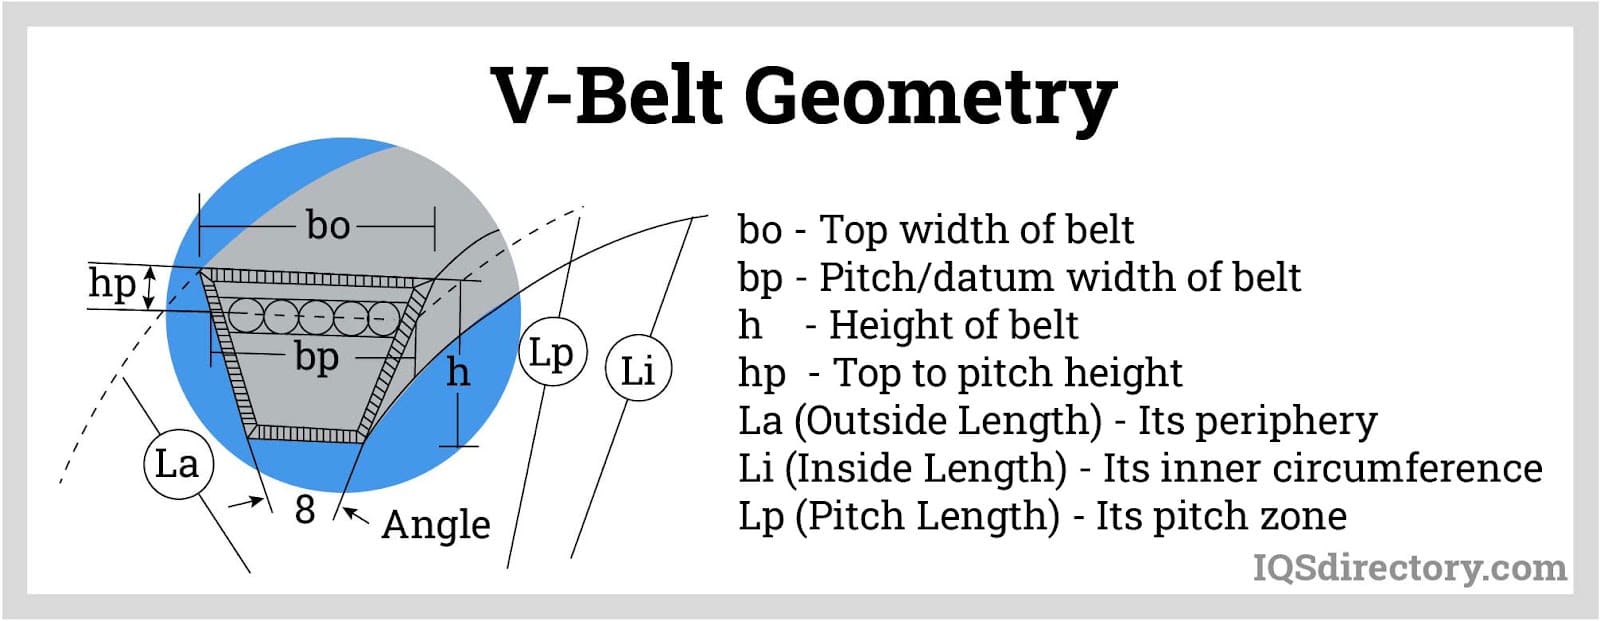 V-Belt Geometry